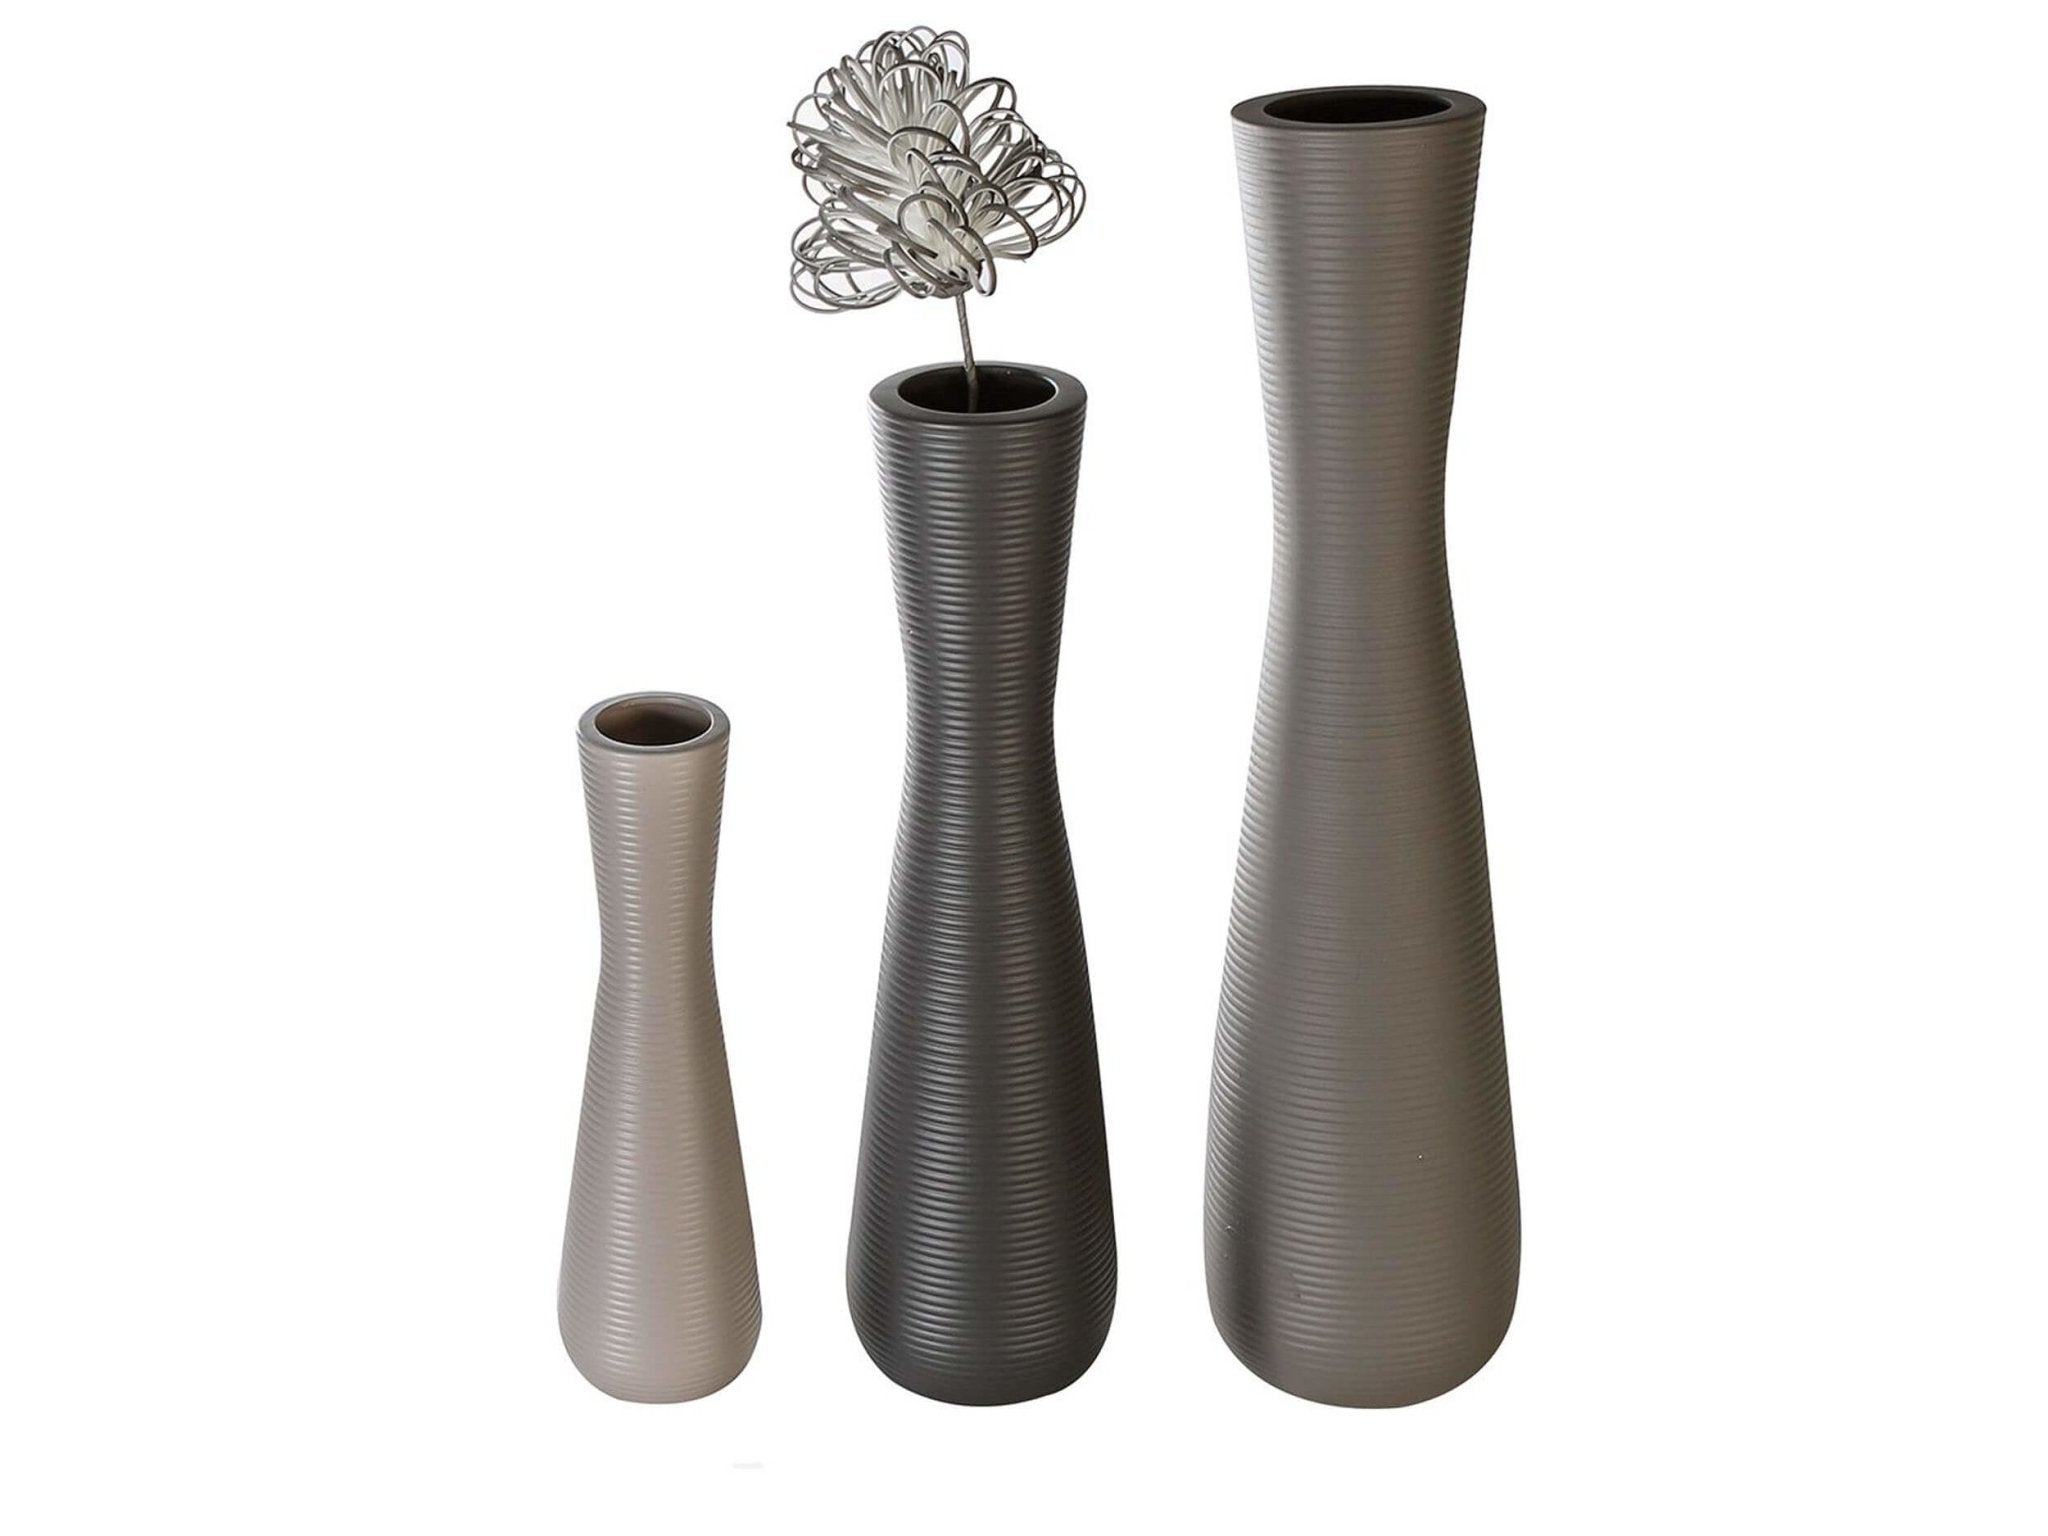 Ribbed Modern Ceramic Vase - Beige | crest | H. 38.5cm